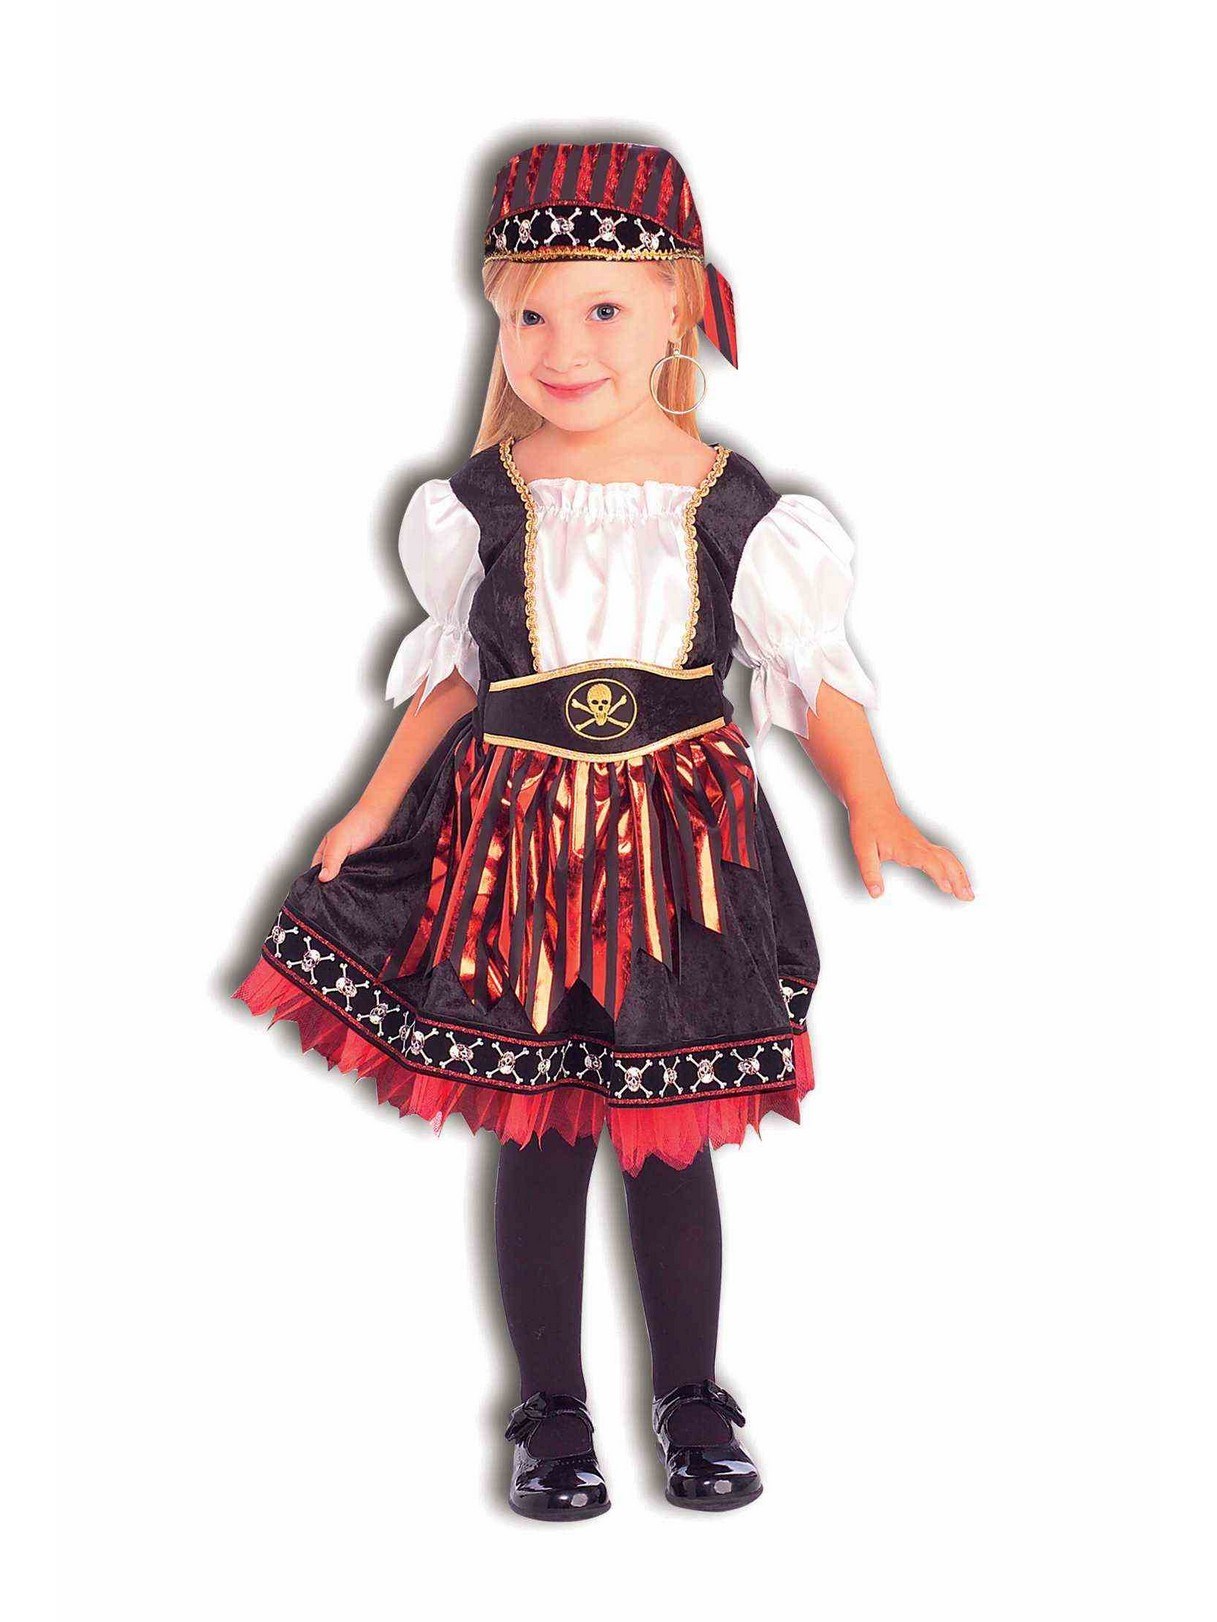 Lil Pirate Cutie Toddler / Child Costume